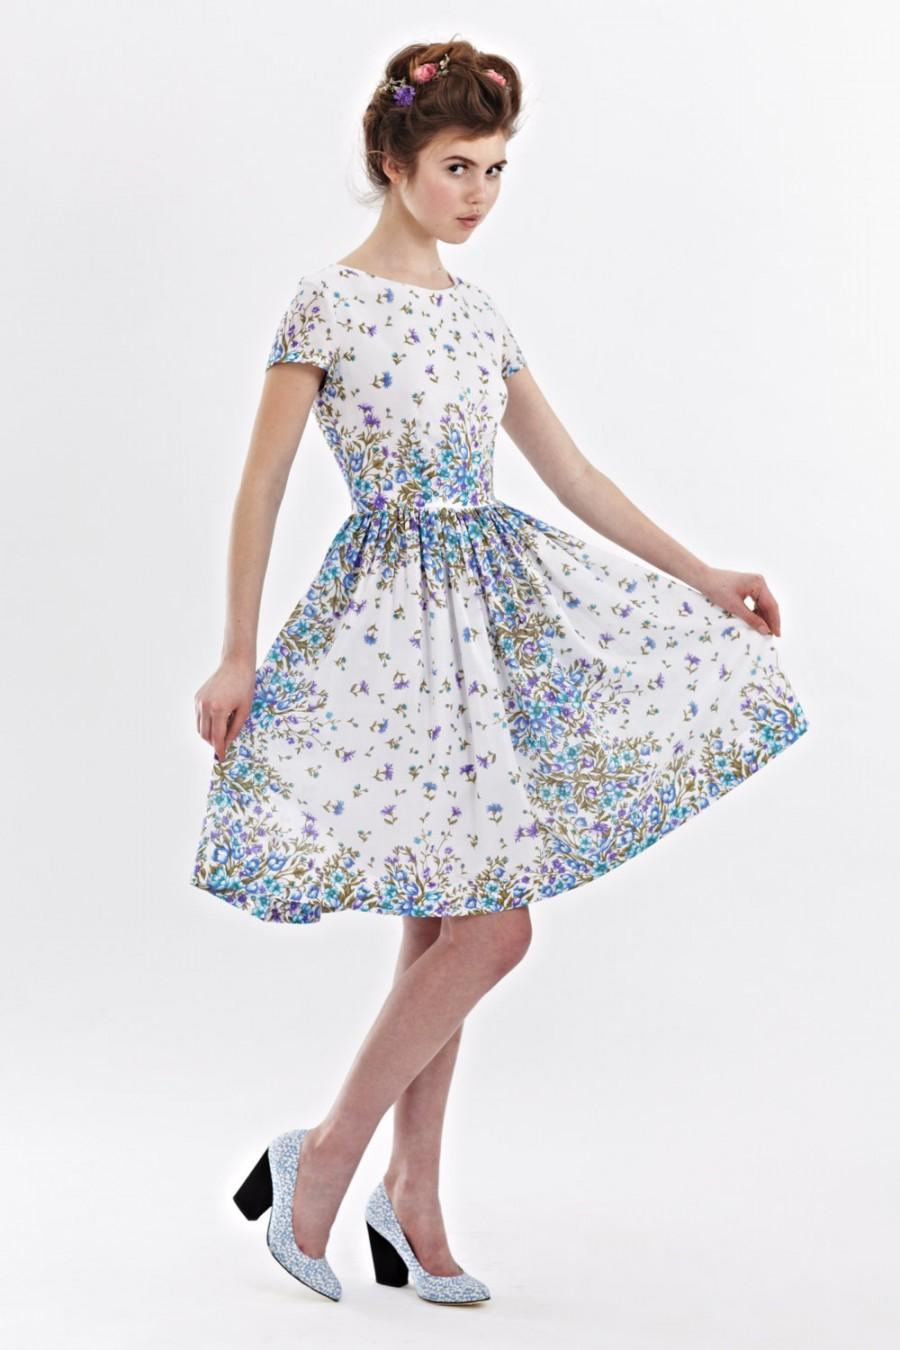 زفاف - 1950s floral dress Tea party dress women 50s Retro dress Prom dress 50s vintage inspired dress Blue 50s dress Dress 50s style Handmade Dress